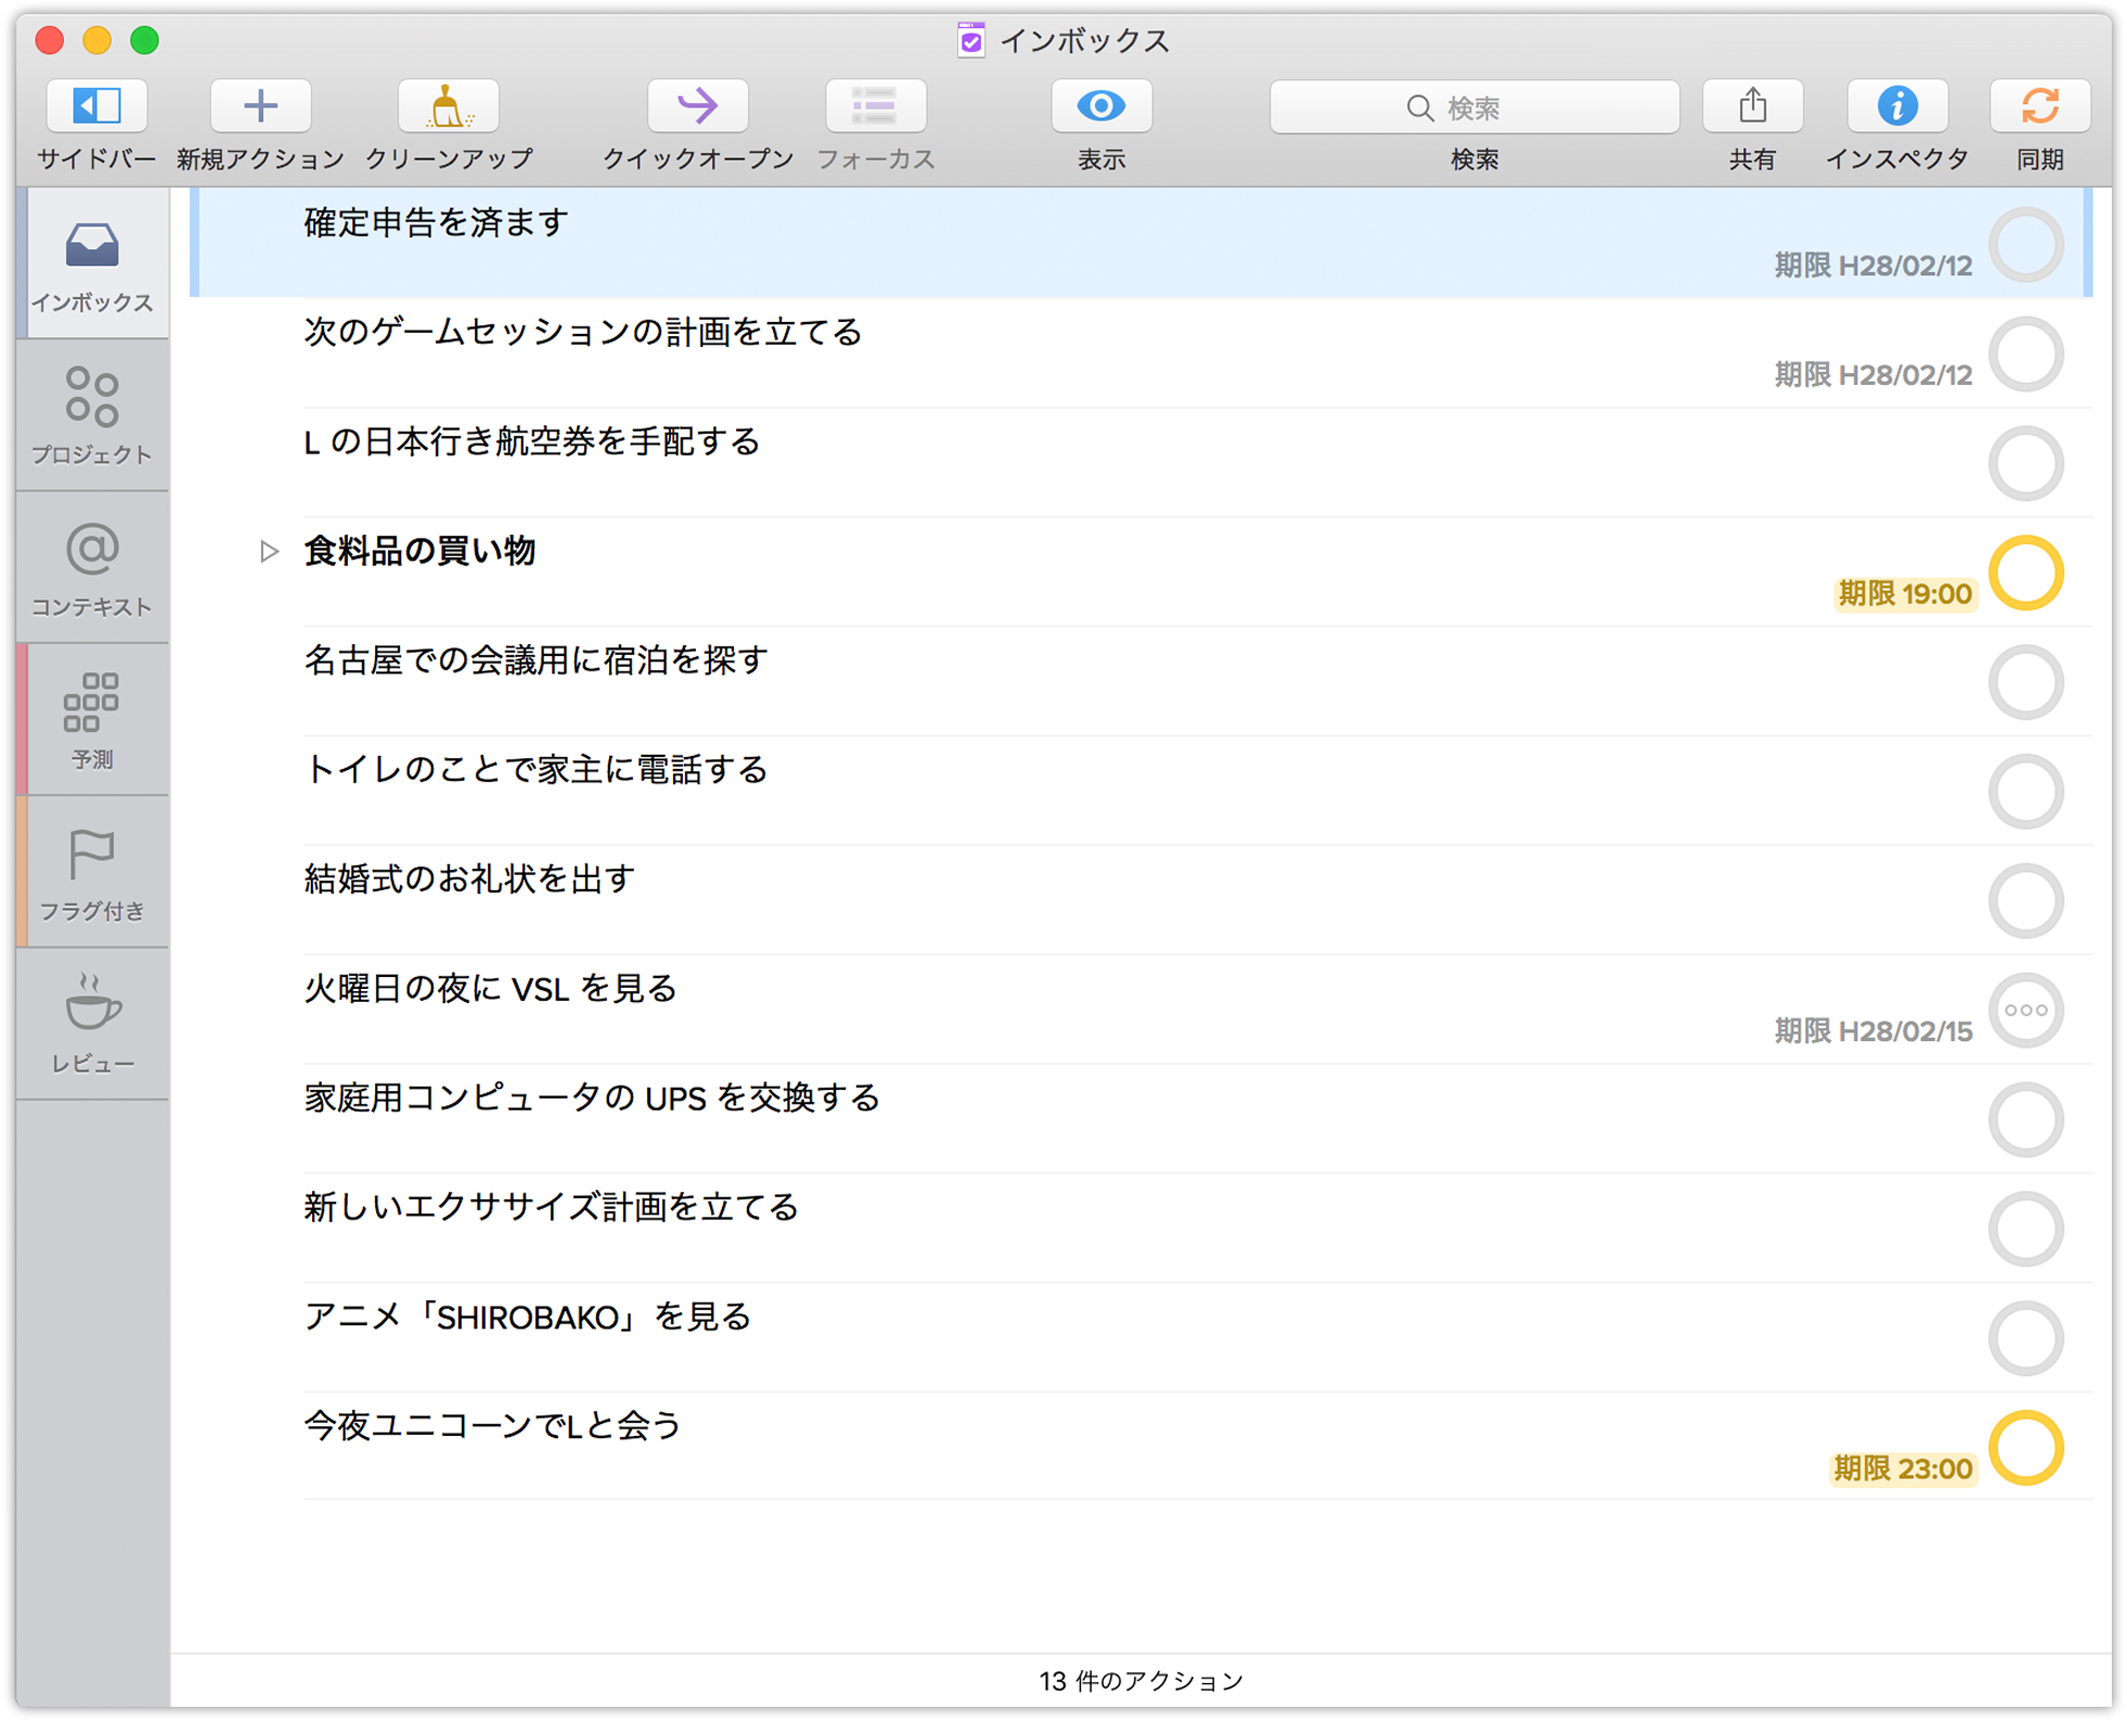 メールと同様に、OmniFocus のインボックスは自分が新規に作成する項目の全般的な入れ物です。